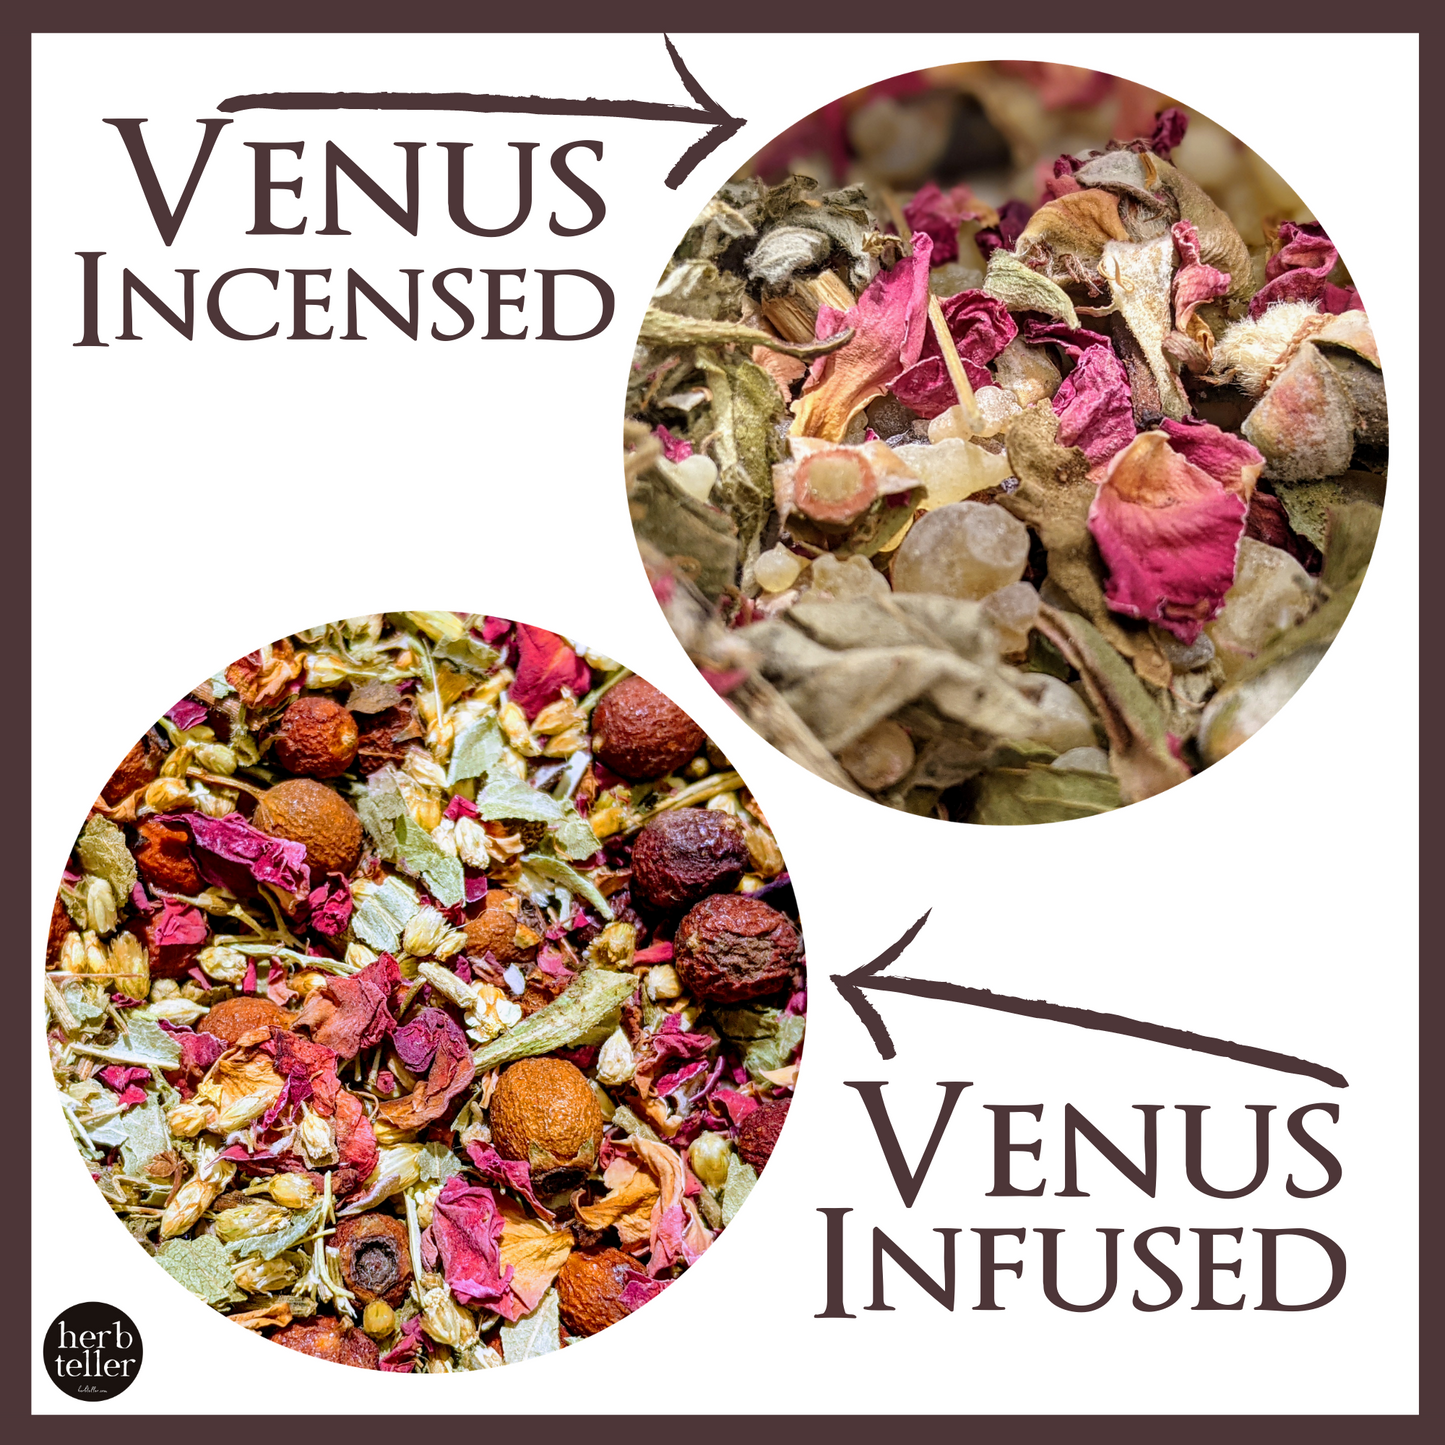 Herbmusement: Oh My Venus Ceremoment DIY (Tea/Incense/Ritual/Oil Set)